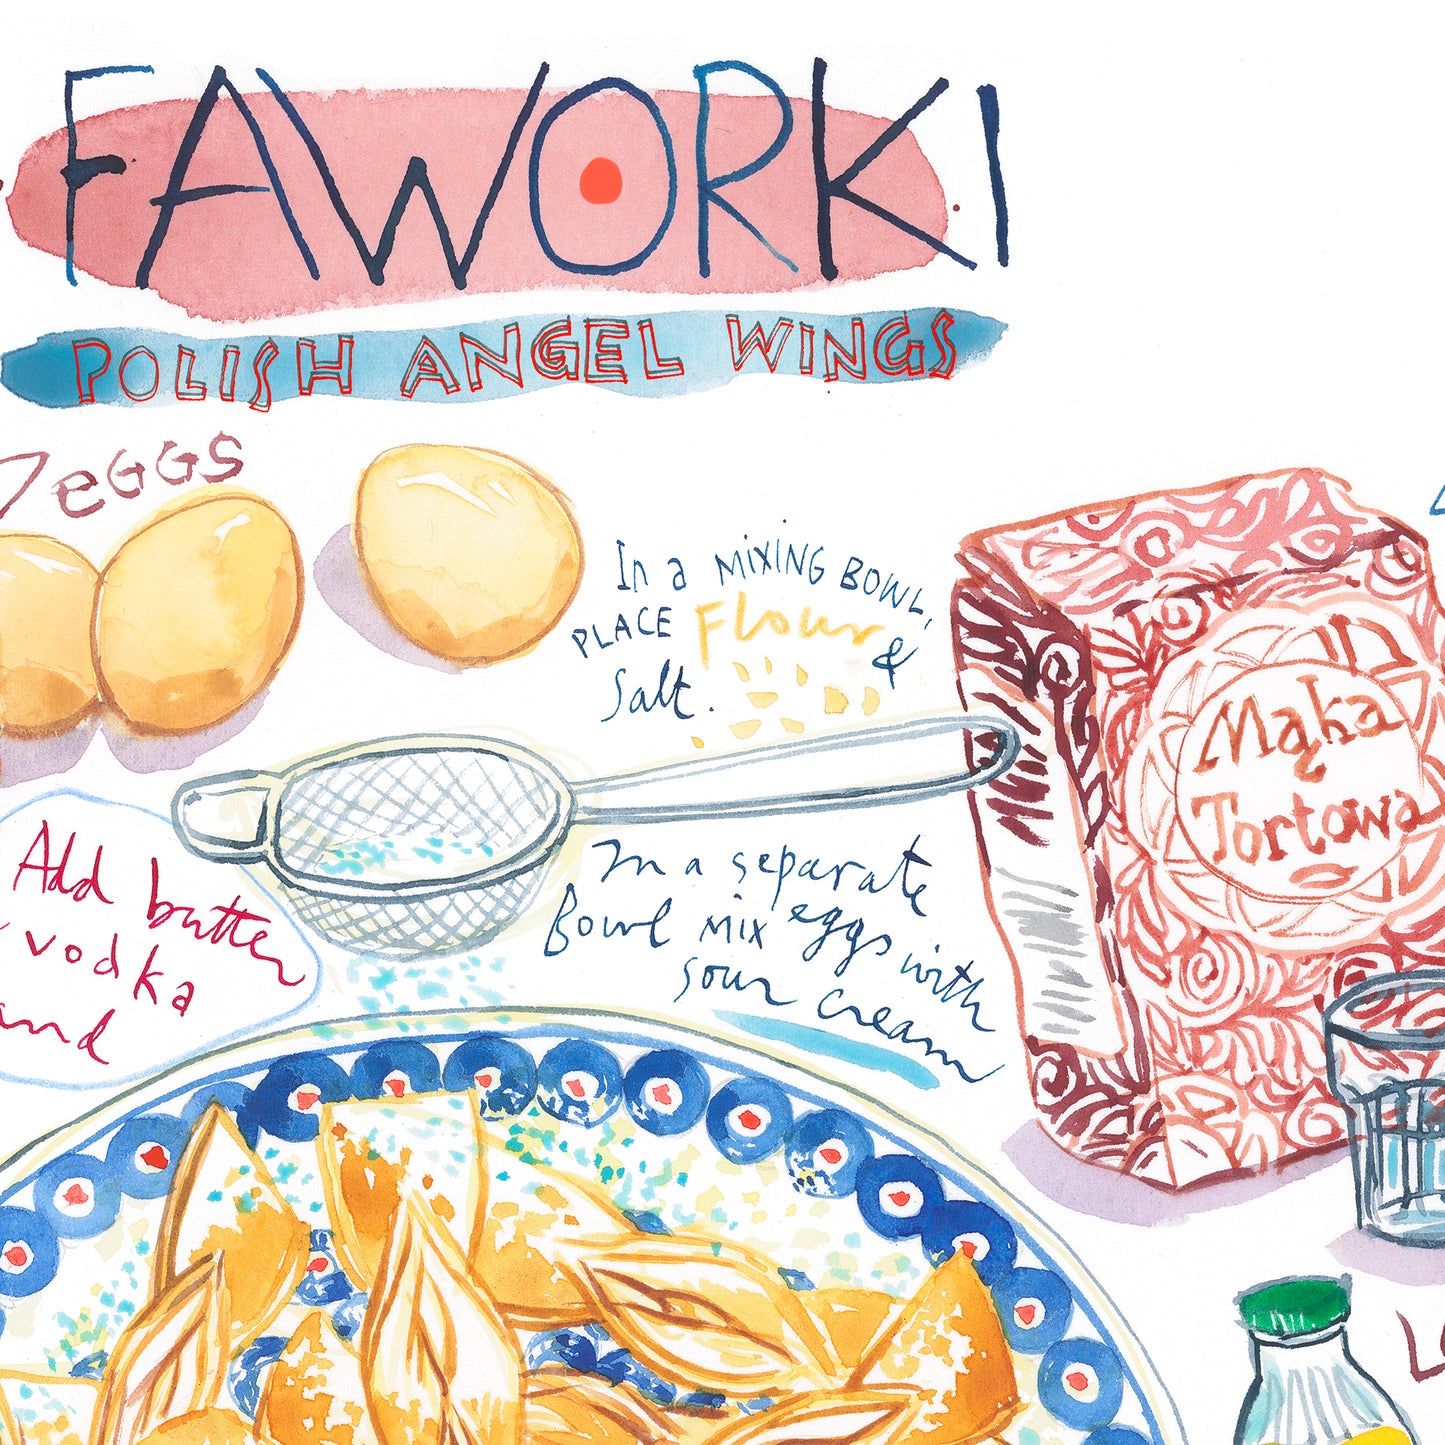 La recette des Faworki